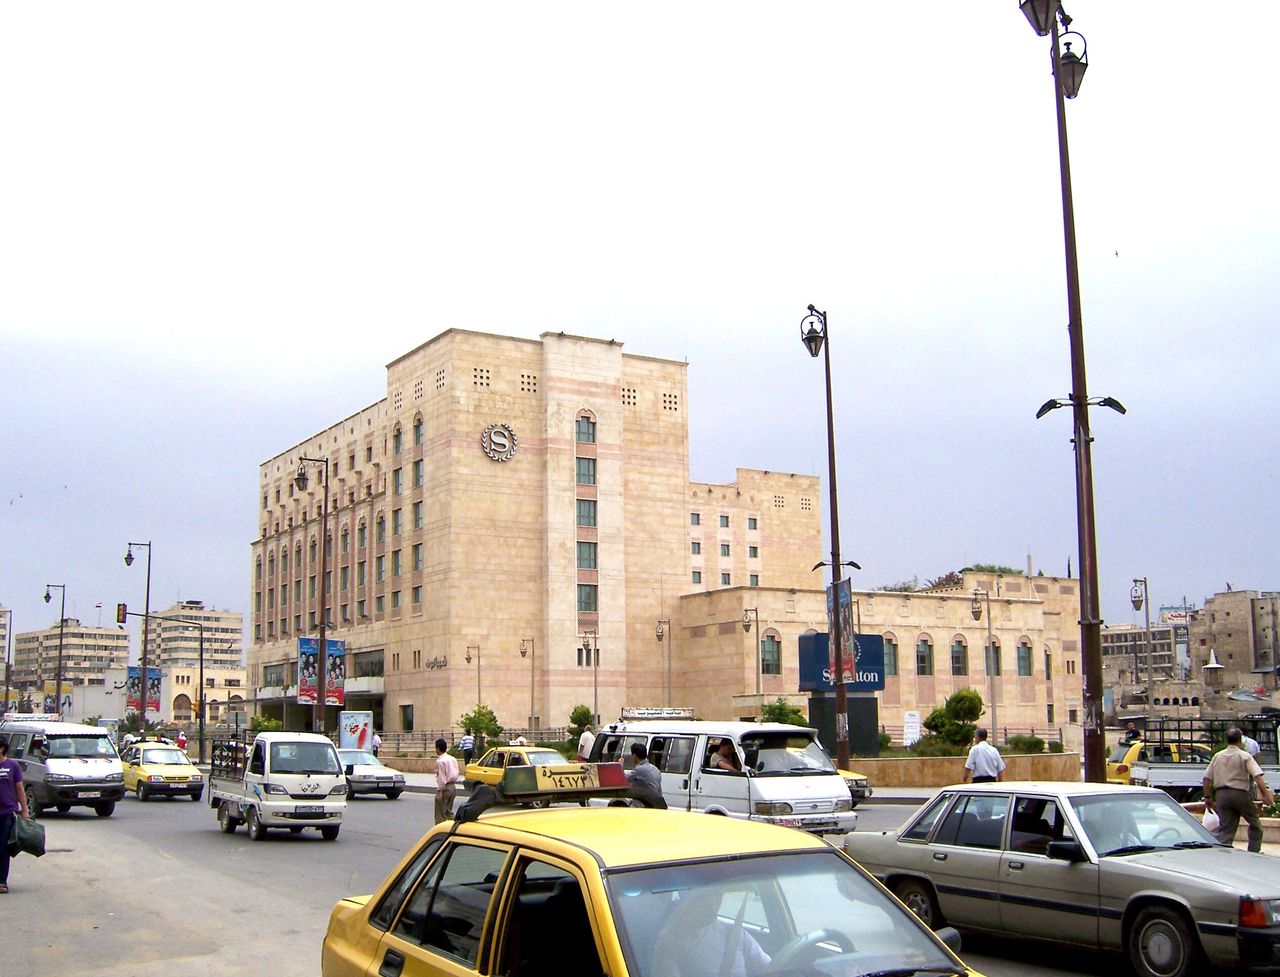 Μια καθημερινή ημέρα στο Χαλέπι του 2005. Στο βάθος διακρίνεται το Aleppo Sheraton Hotel.